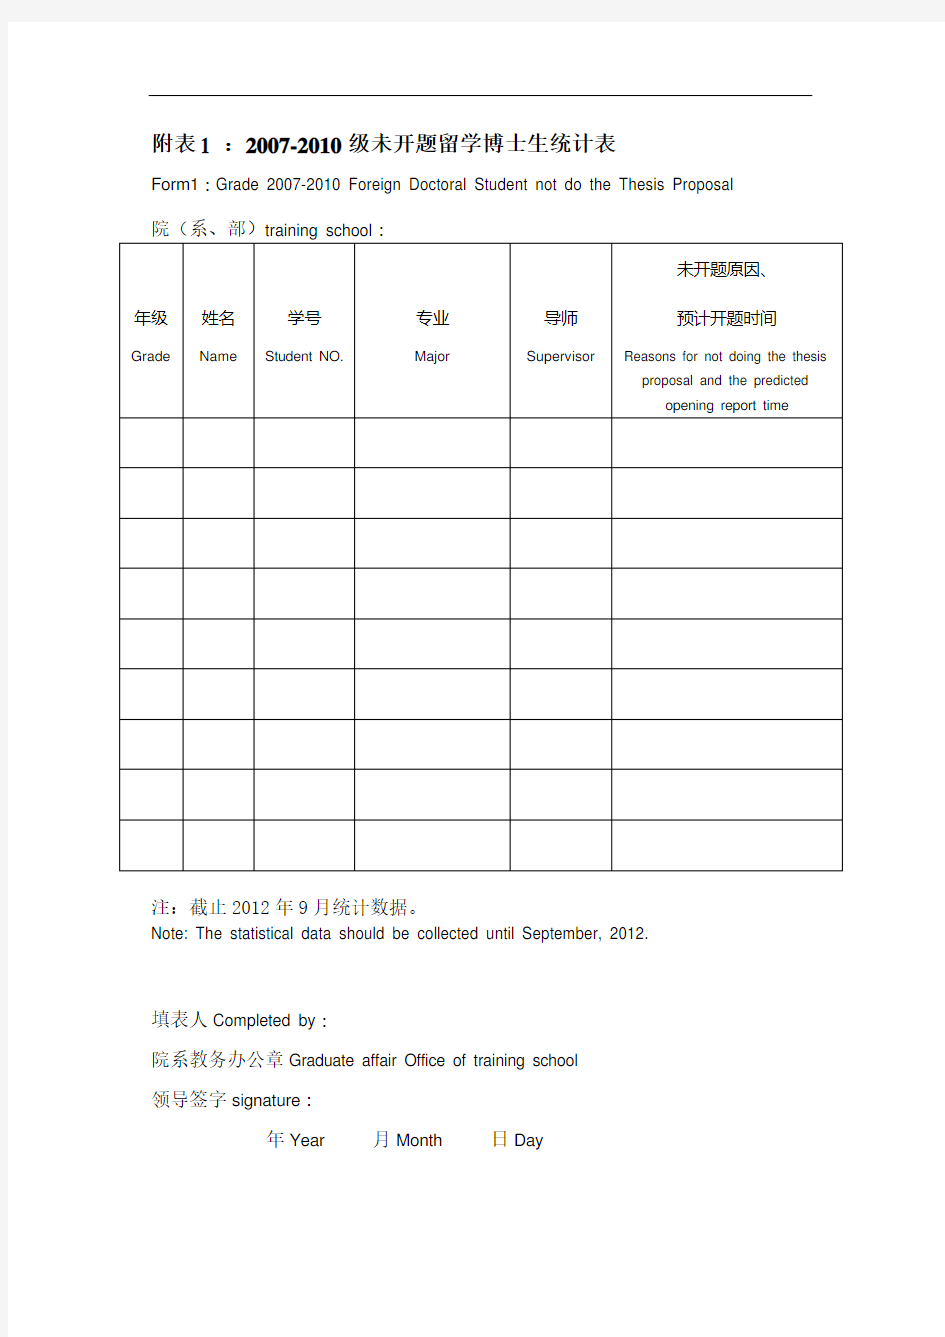 中英文对照表(留学生用)